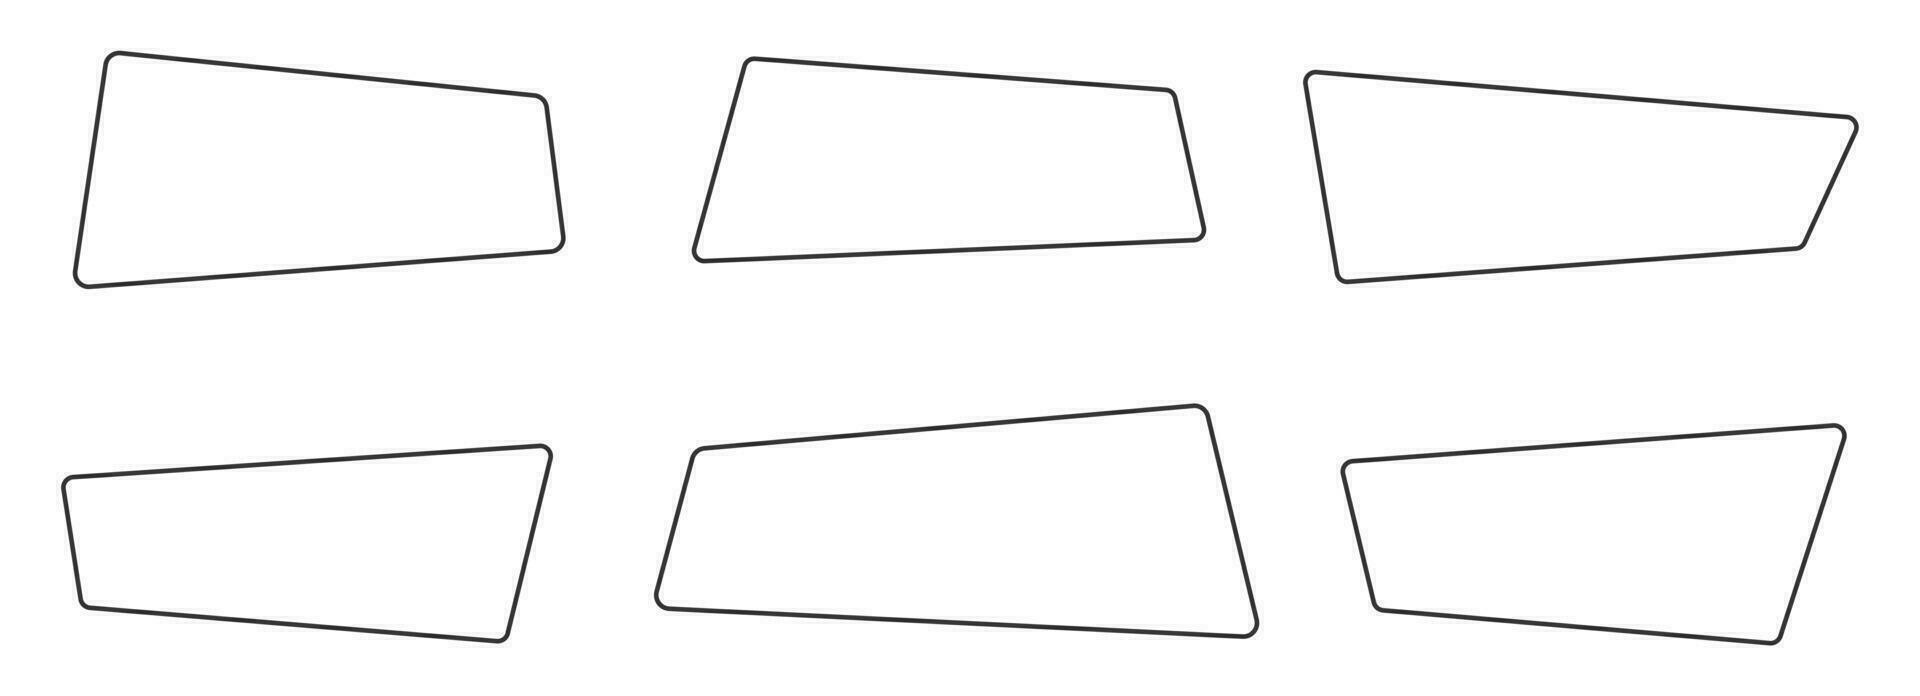 geométrico línea pancartas en plano estilo vector ilustración aislado en blanco